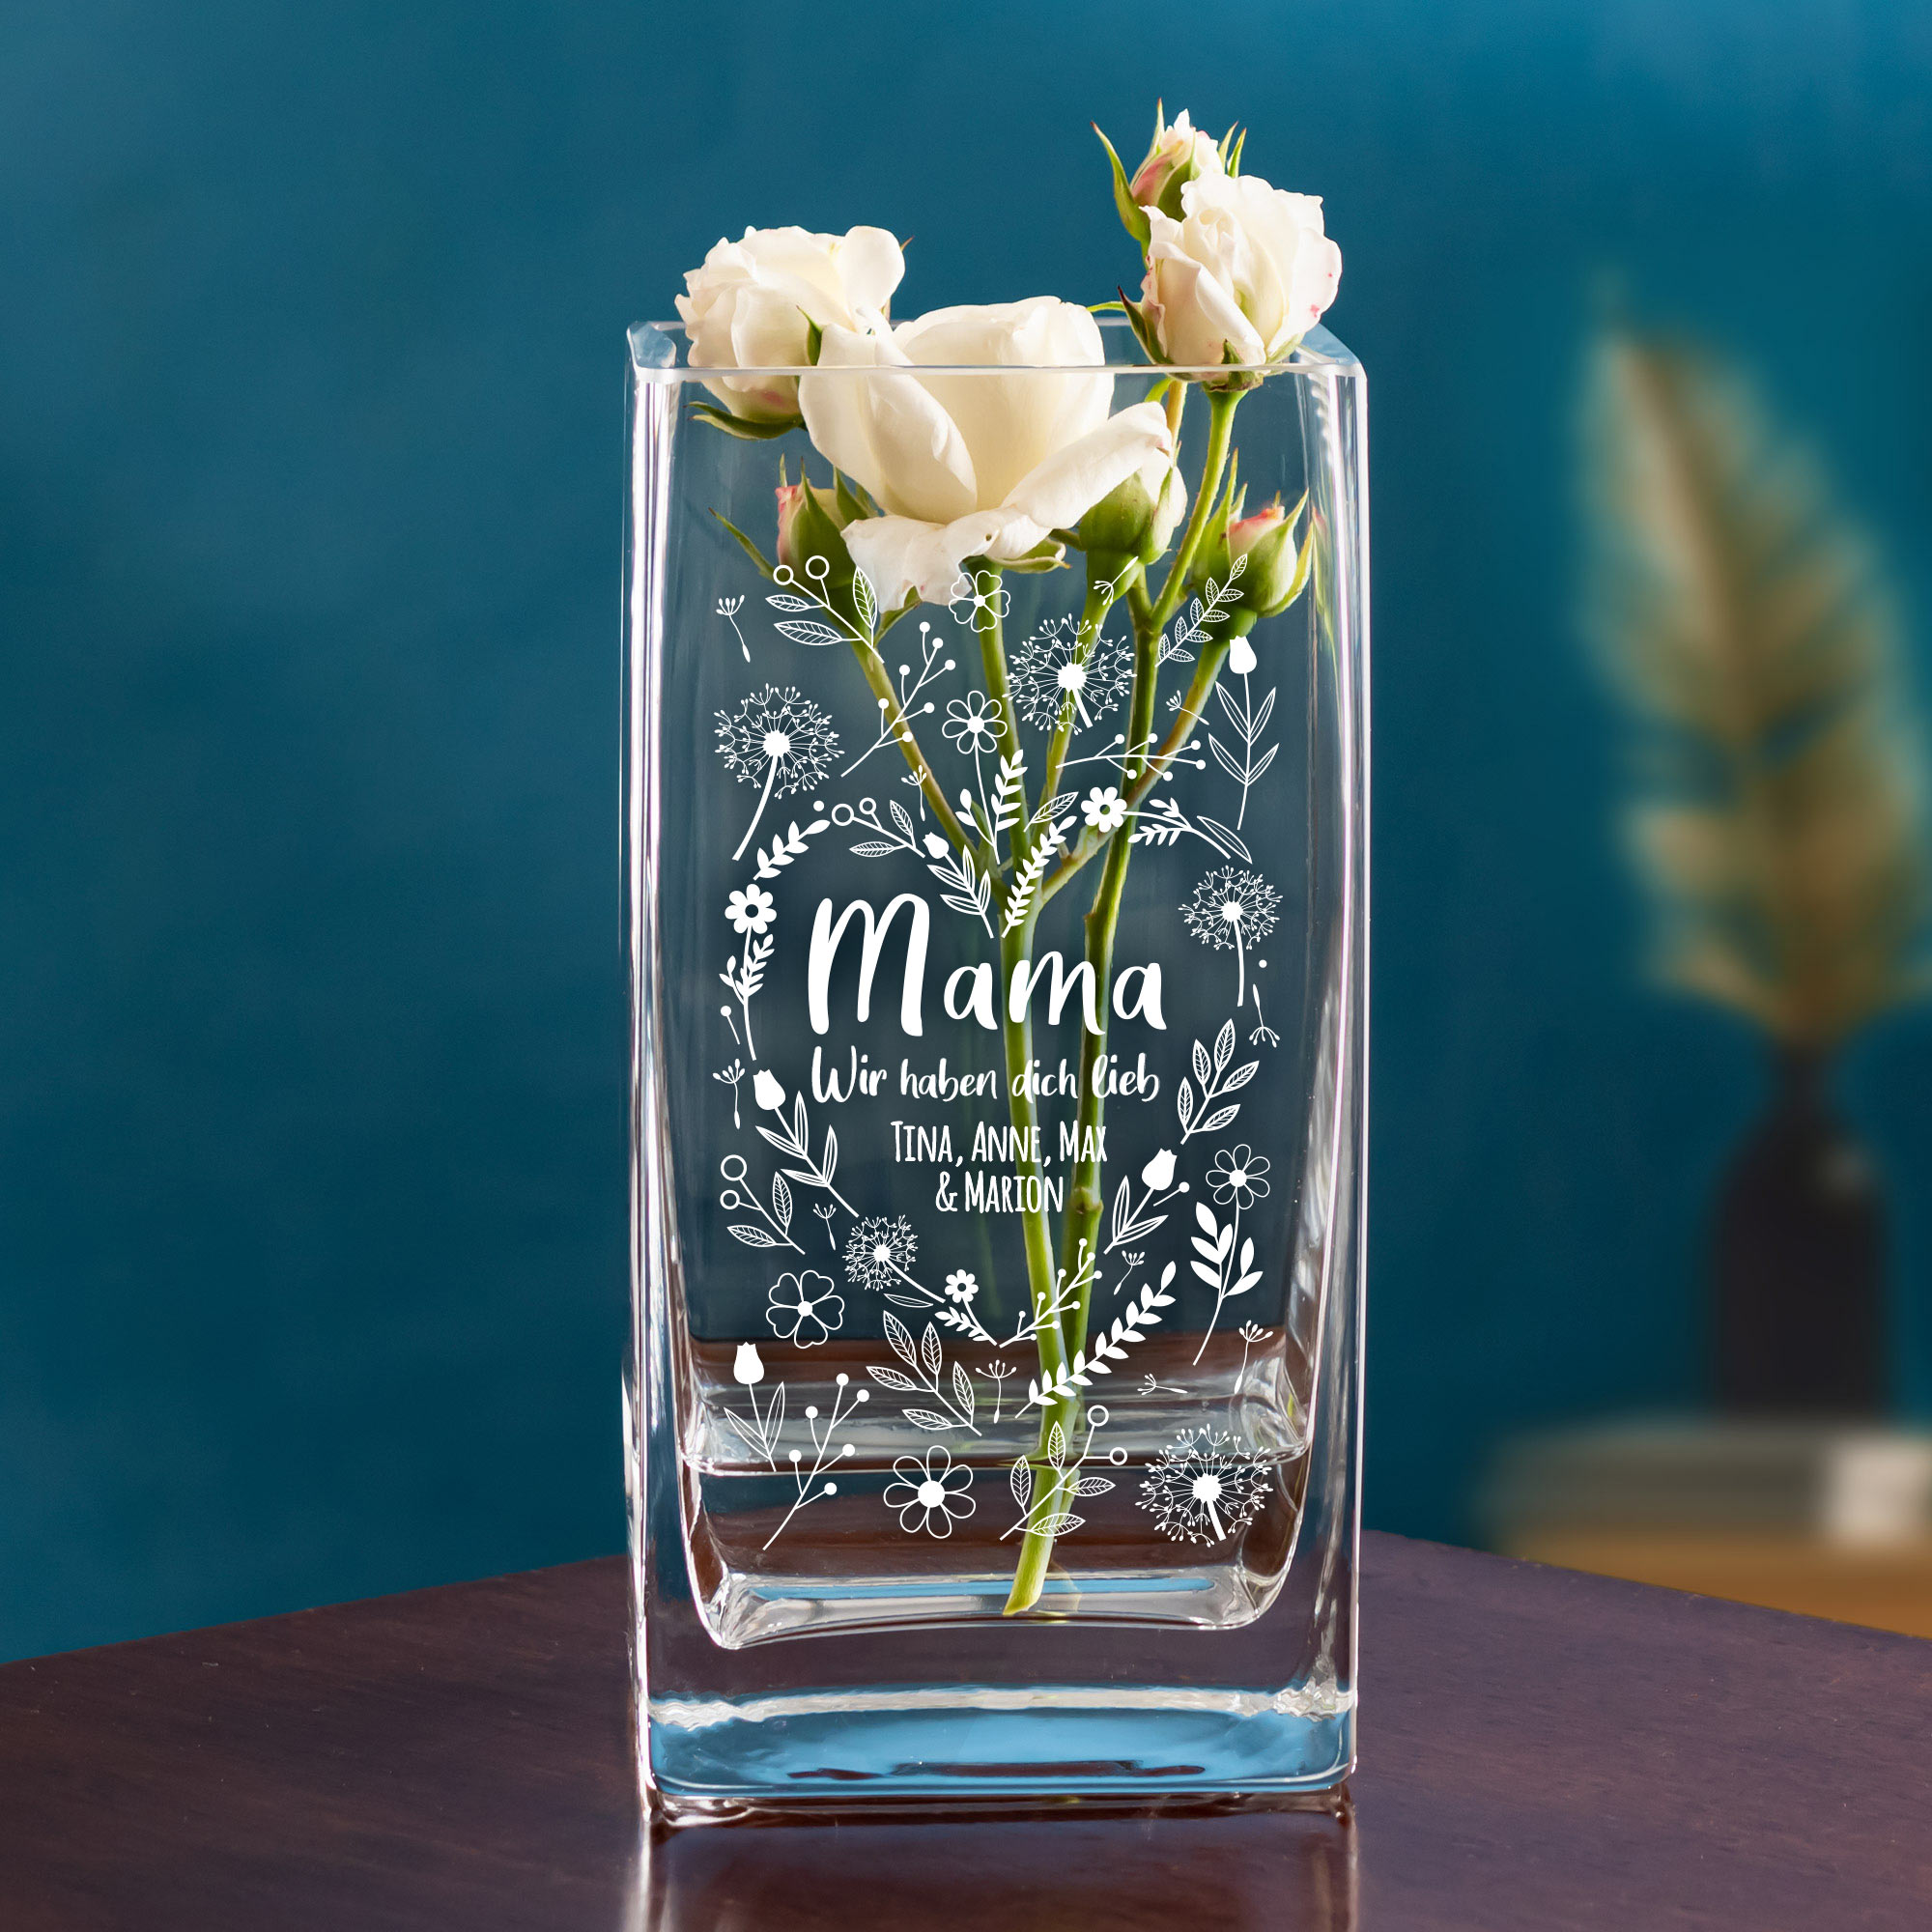 Personalisierte Vase aus Glas mit Gravur für Mama - Blumenherz